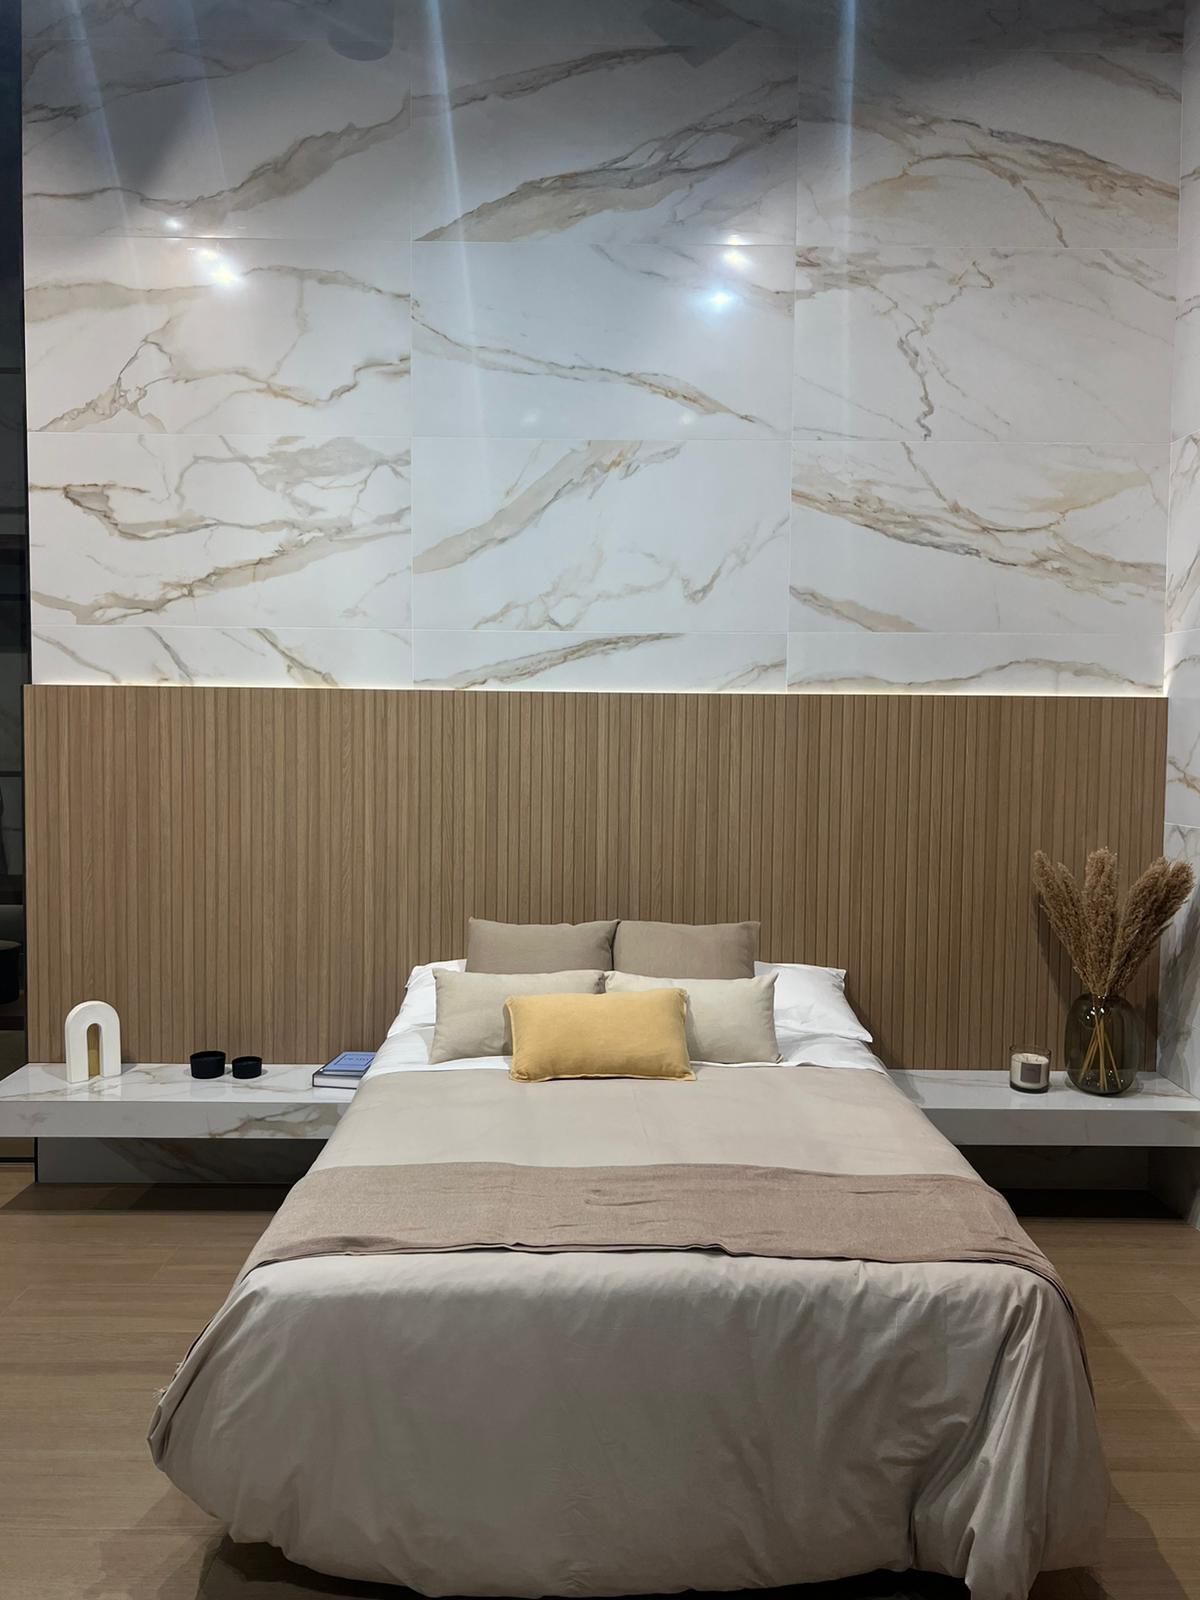  Papel pintado de mármol blanco 3D Línea de oro Mural Dormitorio  Sala de estar Fondo de pared Tela no tejida : Herramientas y Mejoras del  Hogar